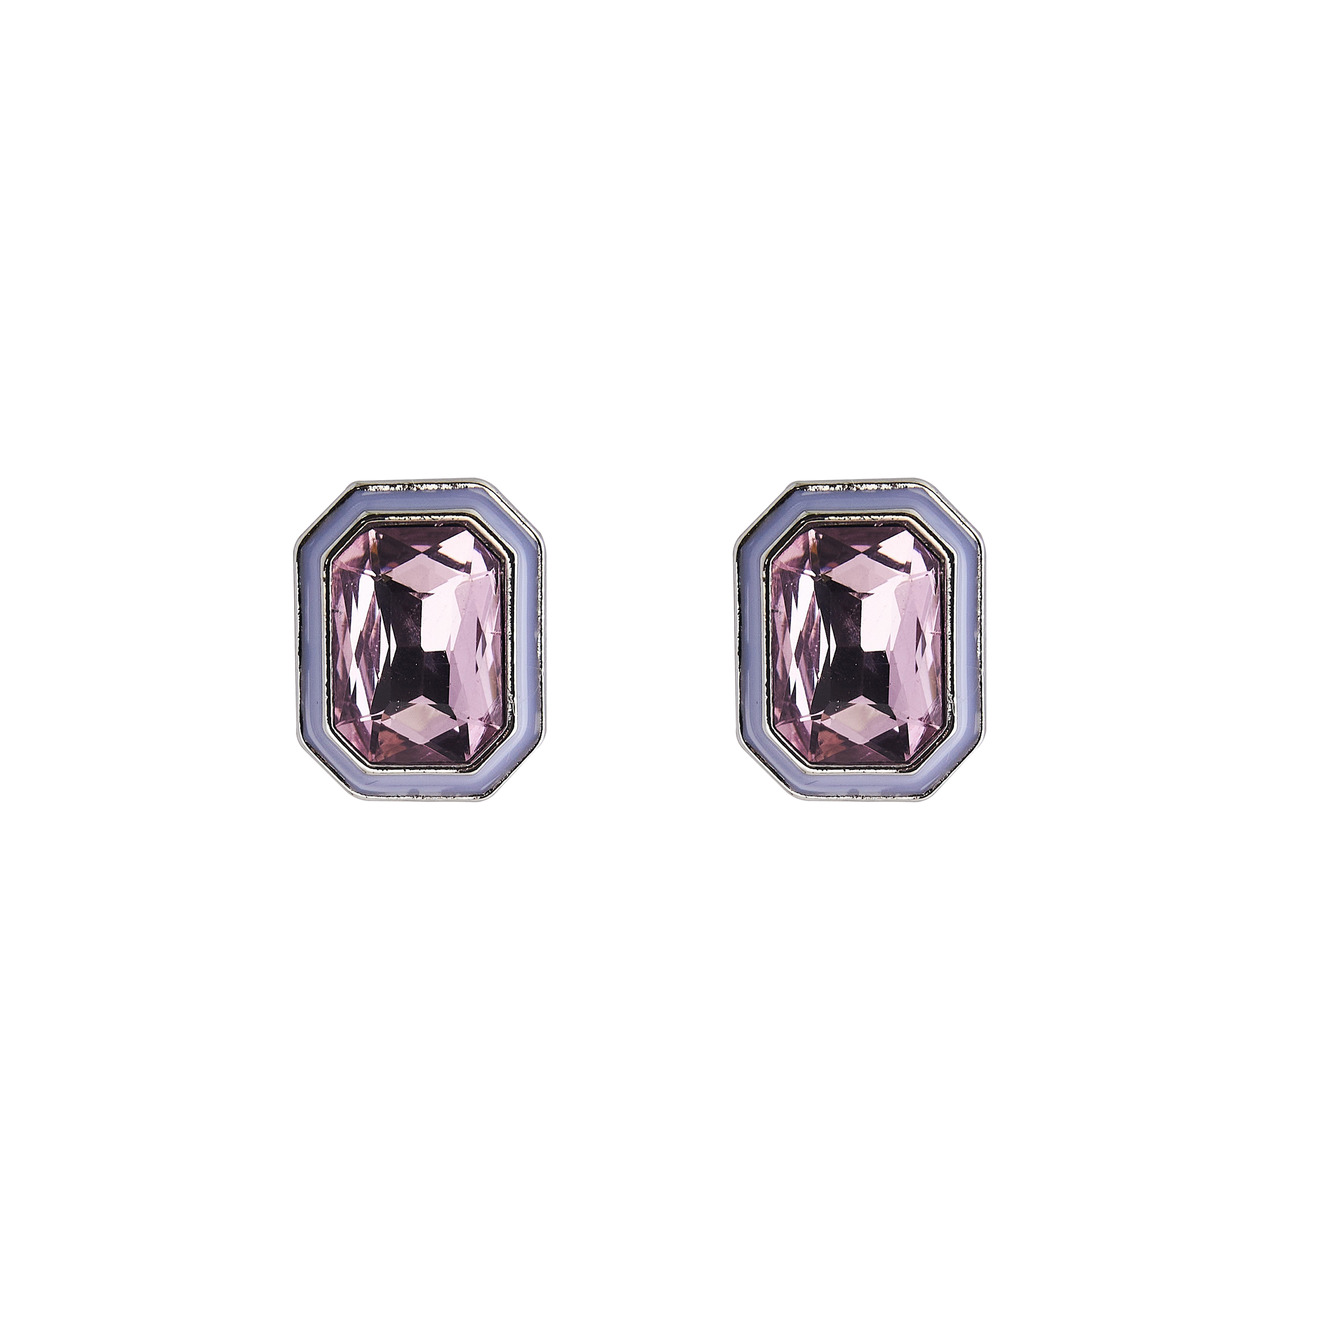 Herald Percy Серебристые серьги с розовыми кристаллами и белой эмалью herald percy серебристые серьги с белыми кристаллами и розовой эмалью